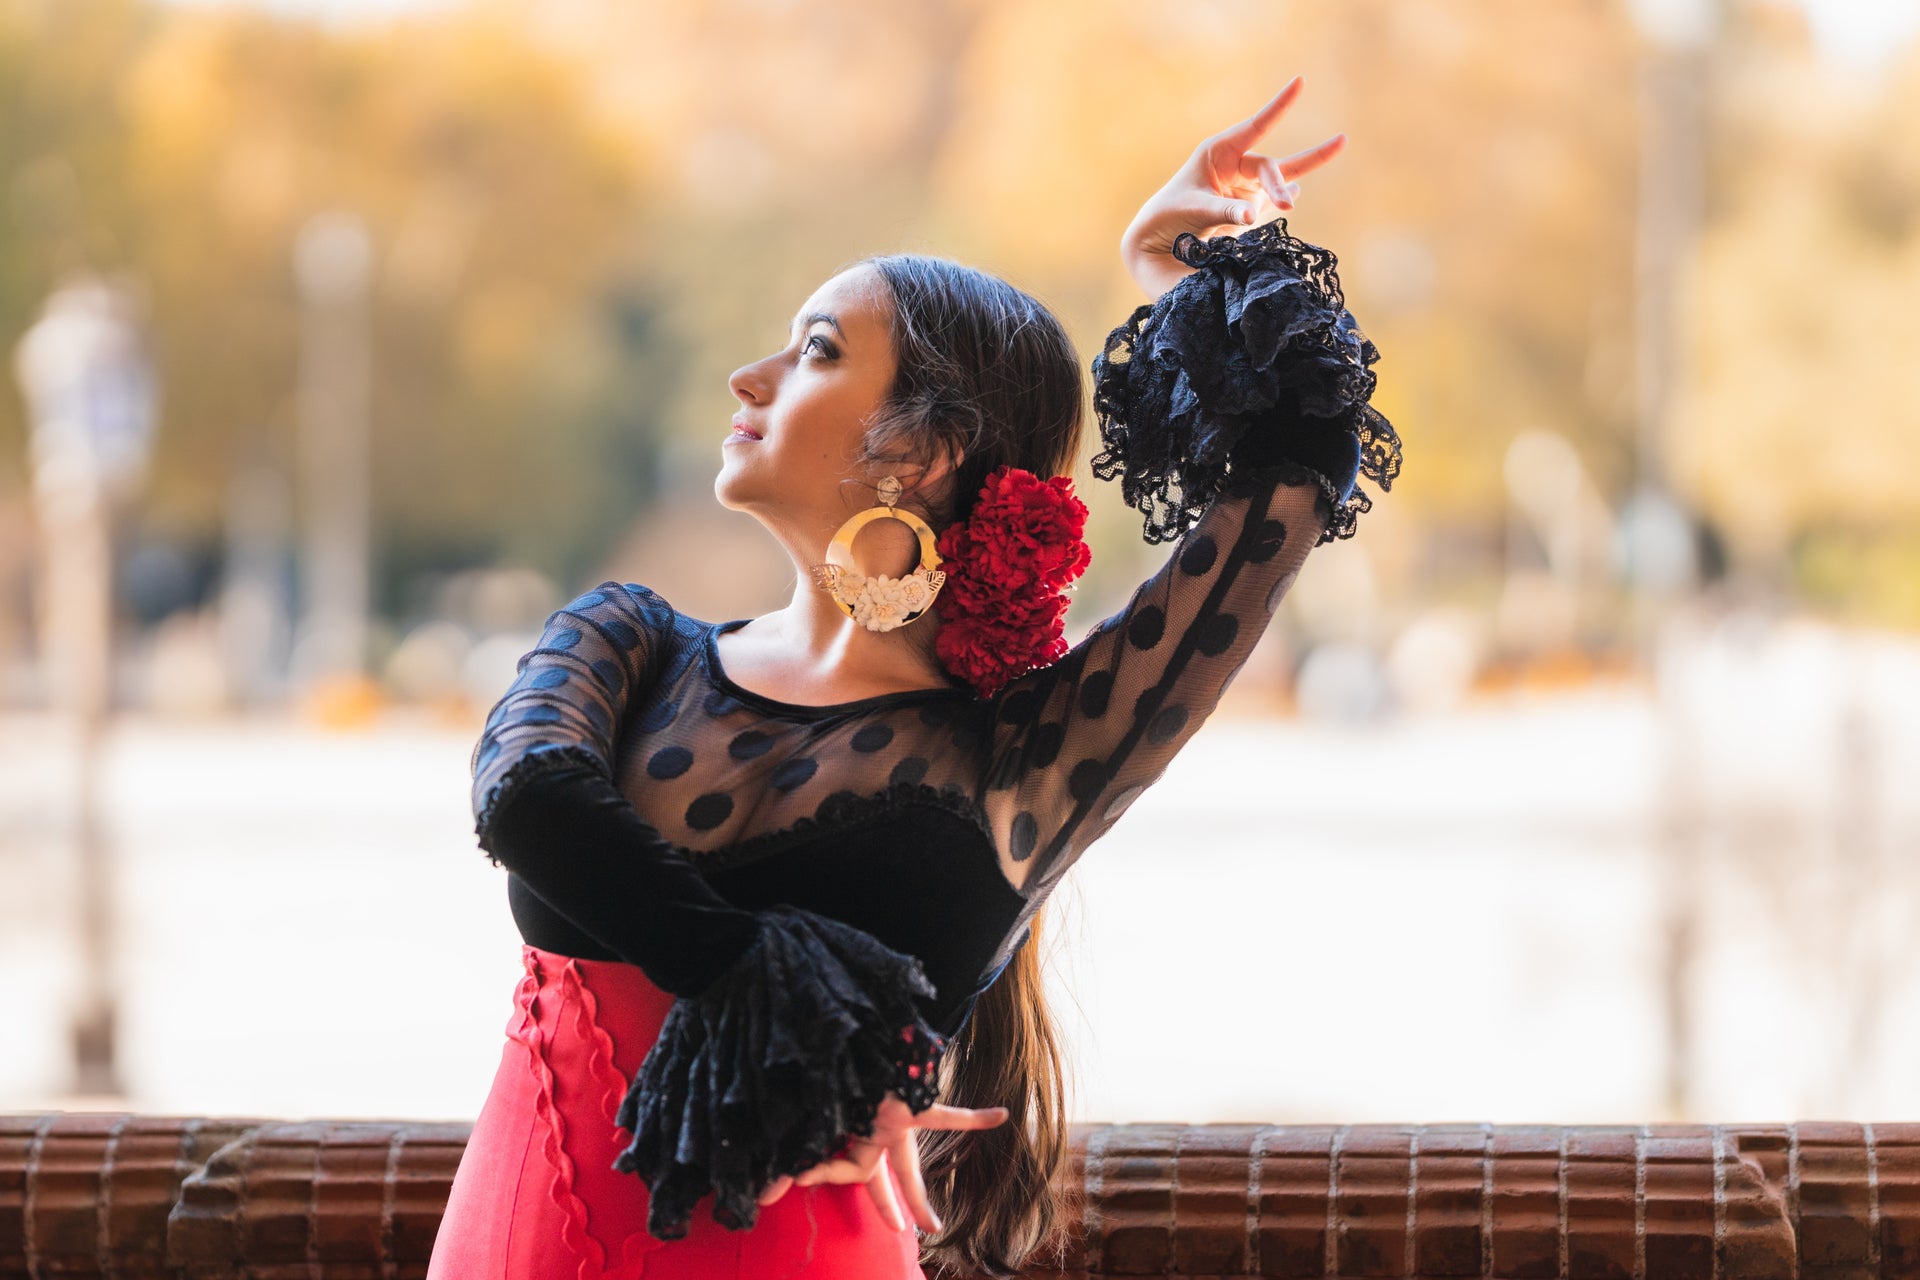 Espetáculo no Museu do Baile Flamenco